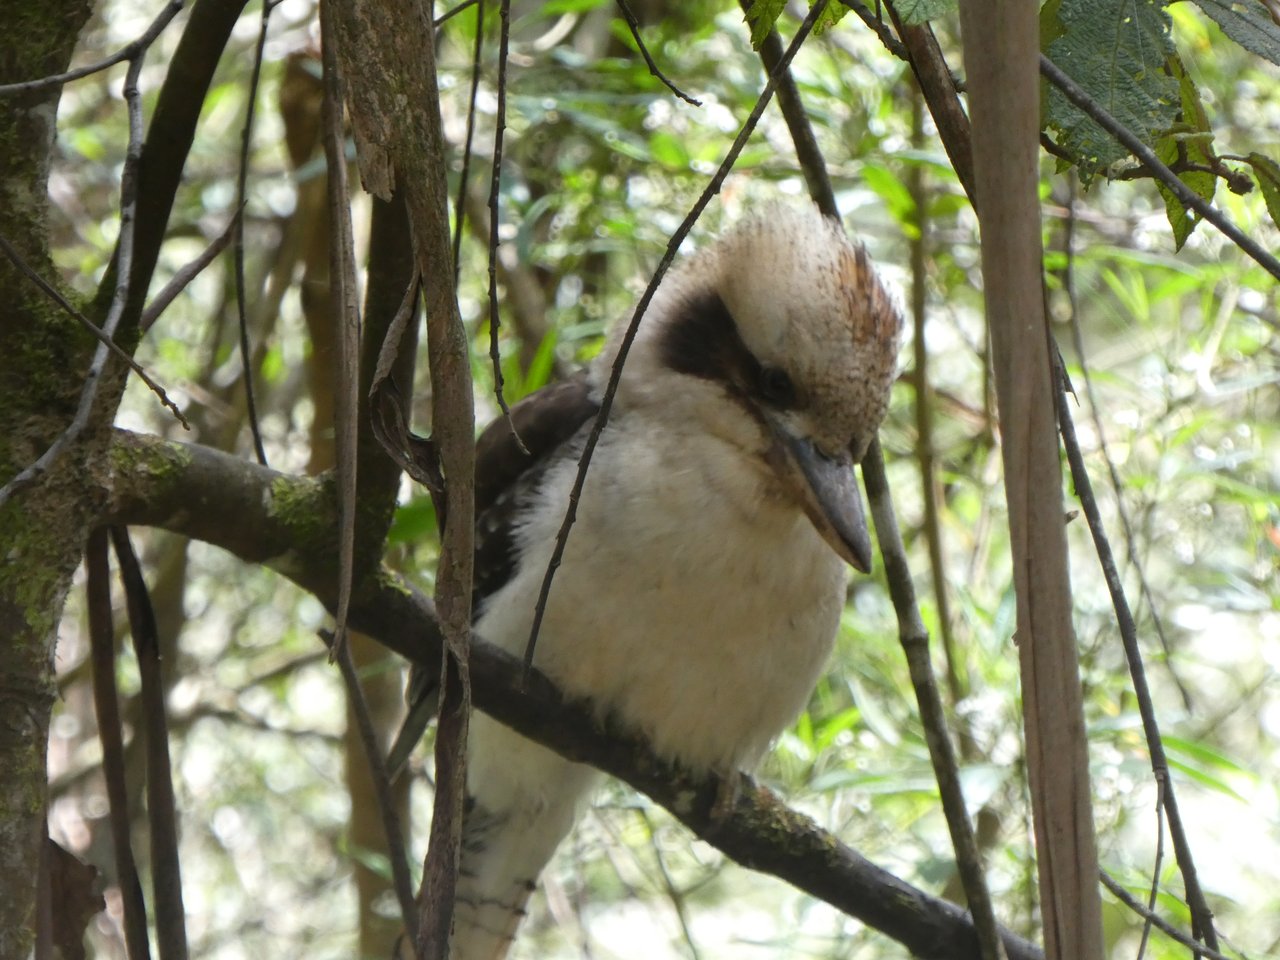 Kookaburra - (czyt. kukabara) - ptak który wydaje dźwięki przypominające paniczny śmiech